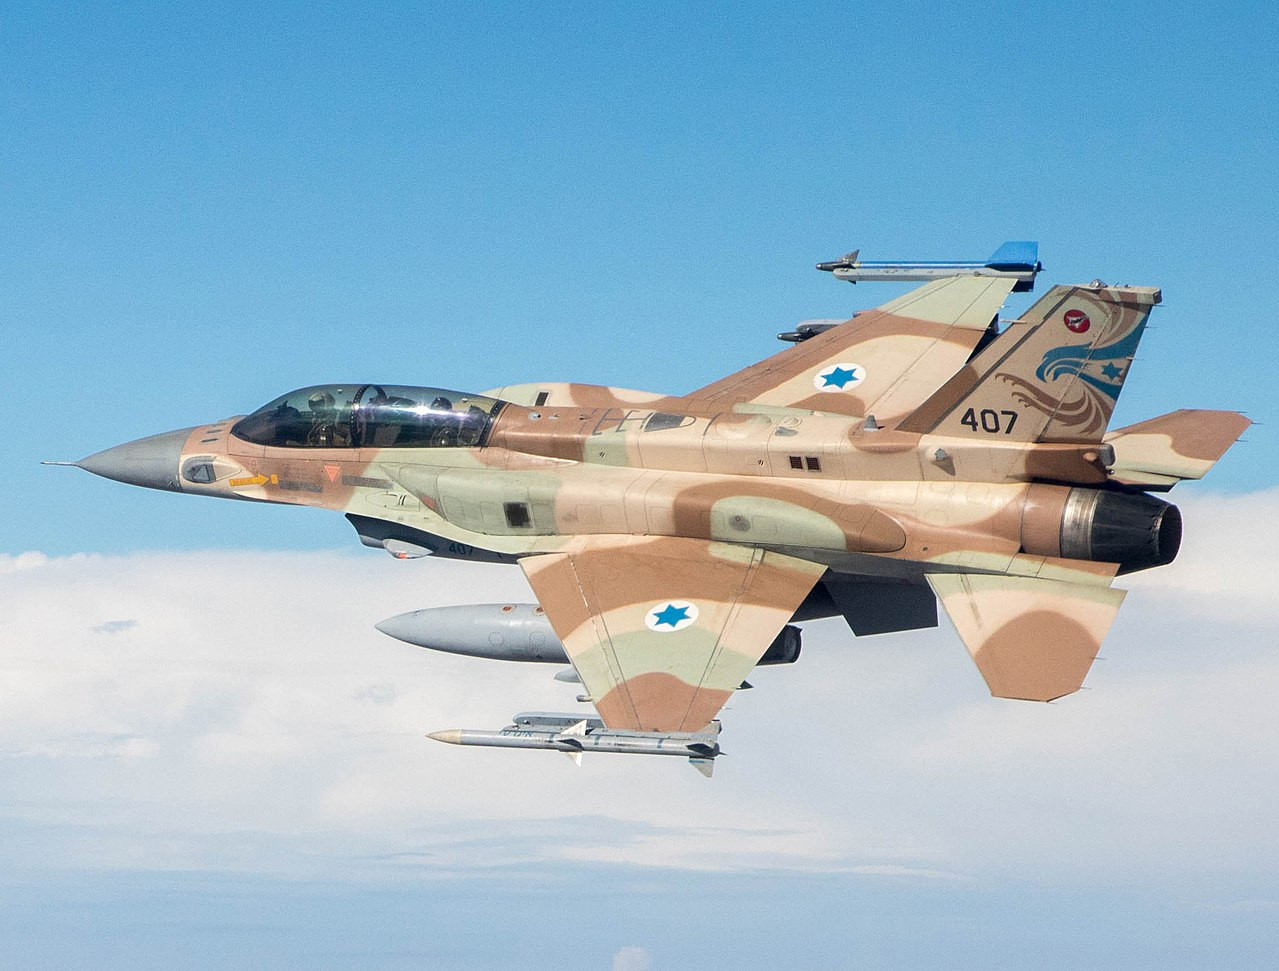 Izrael saját igényei szerint alaposan továbbfejlesztette a gépet.  Az F-16I Sufa a típus talán legnagyobb harcértékű, támadó változata. Forrás: Wikipédia